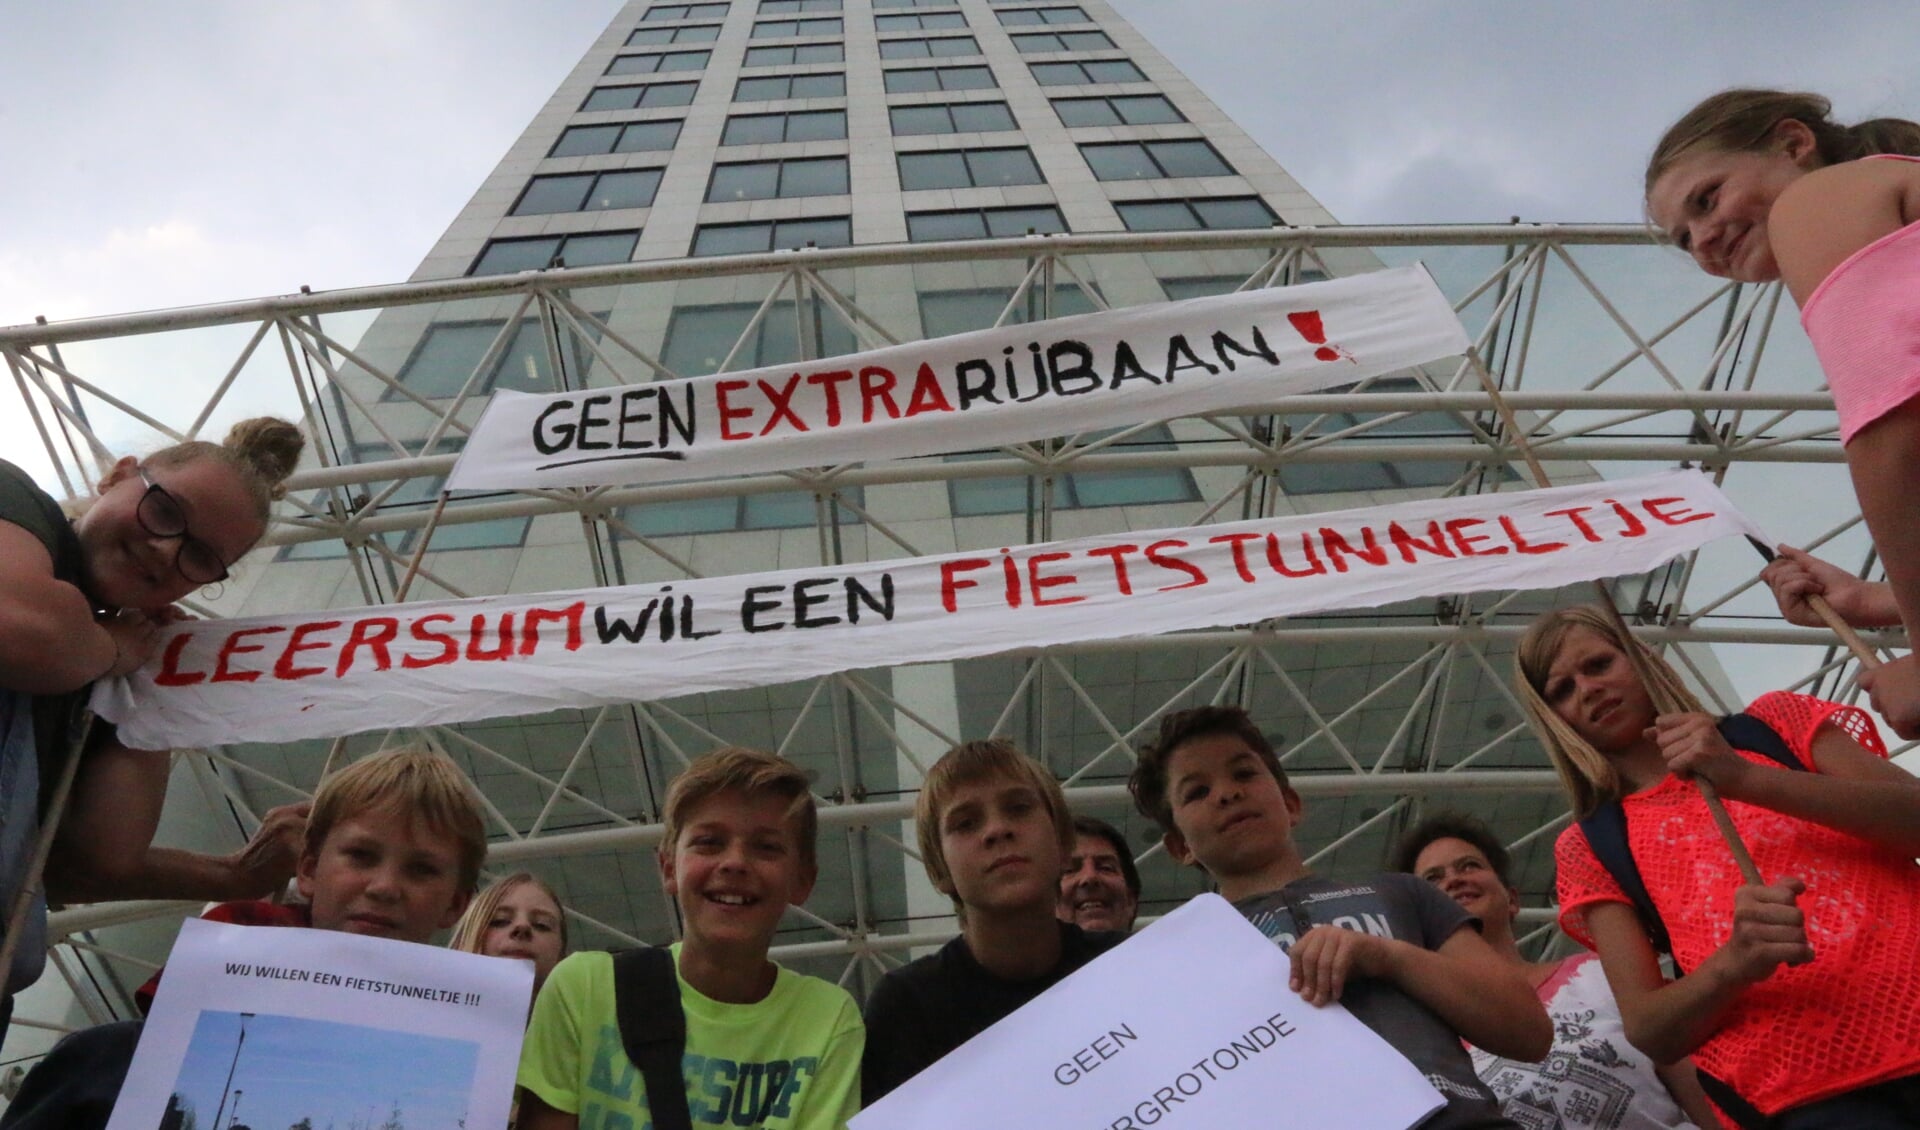 Na afloop van hun protest mochten de leerlingen met de supersnelle glazen lift naar de zeventiende verdieping van het Provinciehuis.